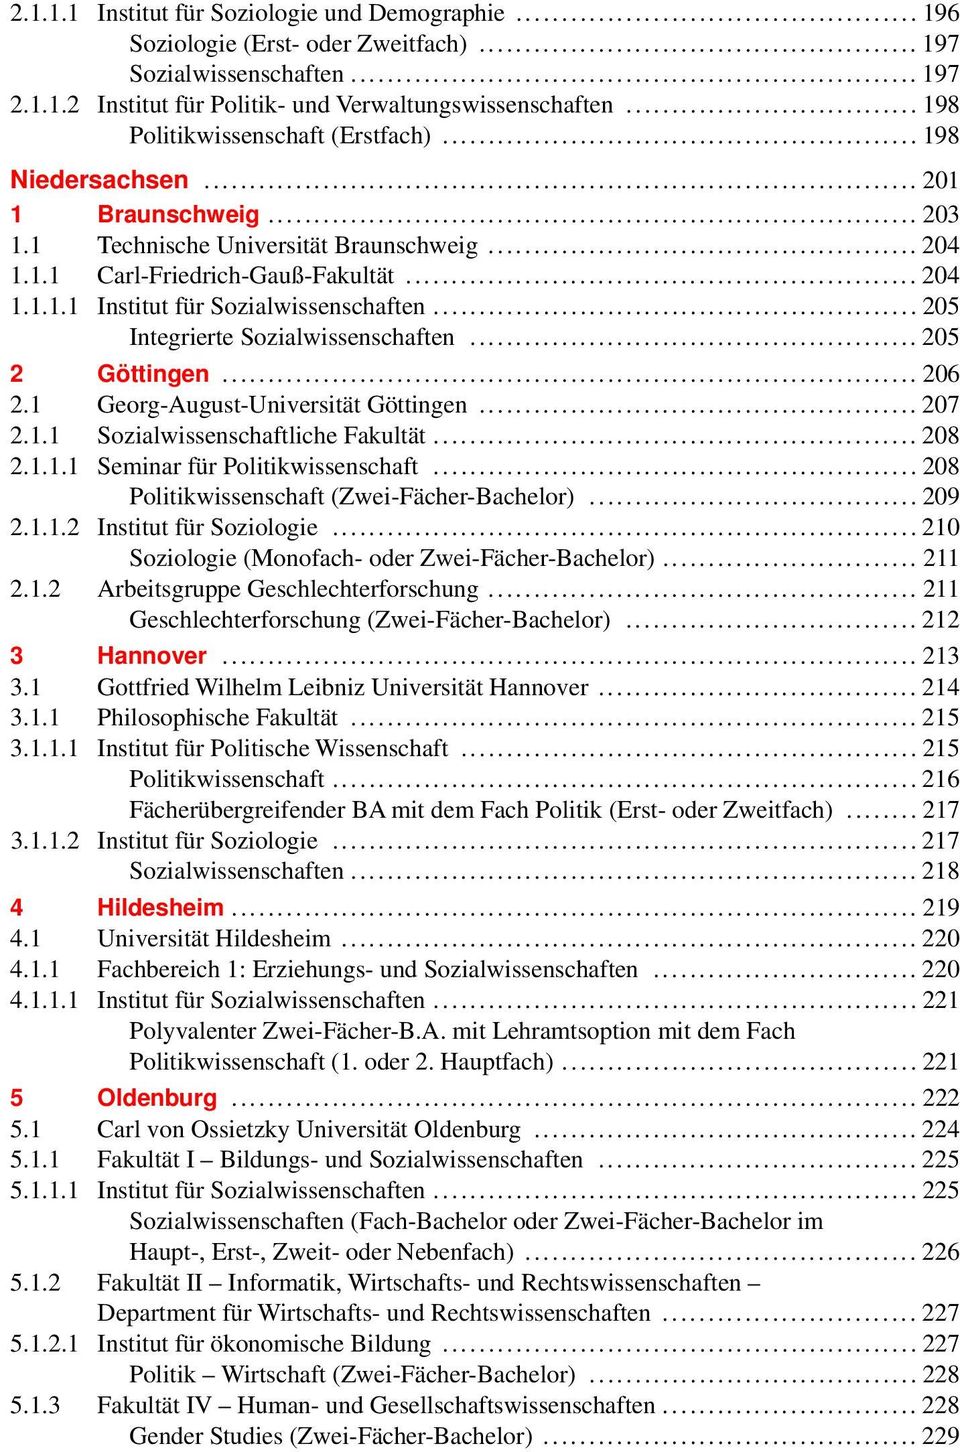 .. 205 Integrierte Sozialwissenschaften... 205 2 Göttingen... 206 2.1 Georg-August-Universität Göttingen... 207 2.1.1 Sozialwissenschaftliche Fakultät... 208 2.1.1.1 Seminar für Politikwissenschaft.